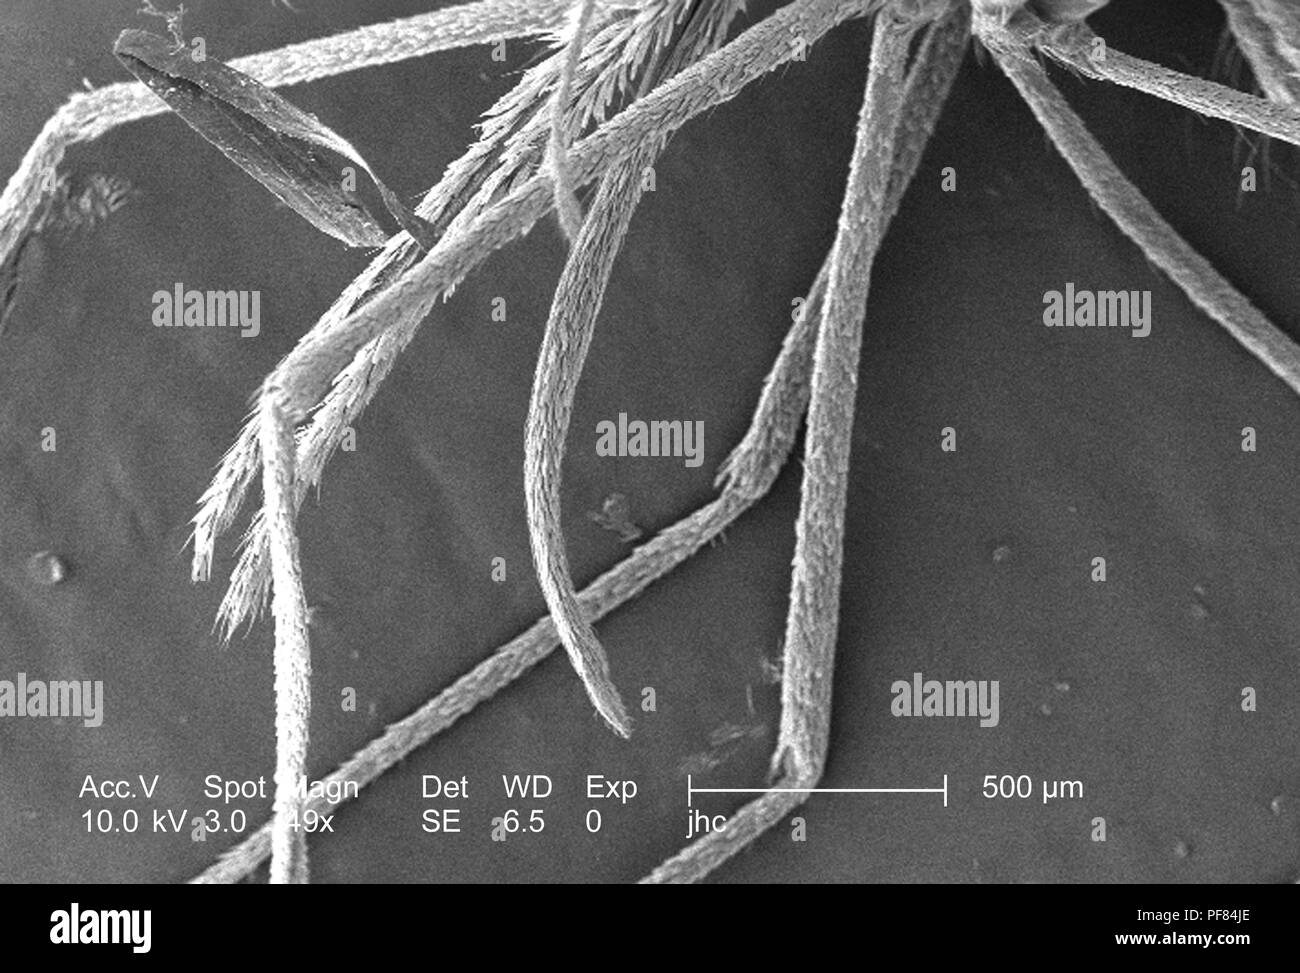 Caractéristiques morphologiques d'un moustique Anopheles gambiae, révélé dans le 49x amplifiés en microscopie électronique à balayage (MEB) de droit, 2006. Image courtoisie Centres for Disease Control (CDC) / Dr Paul Howell. () Banque D'Images